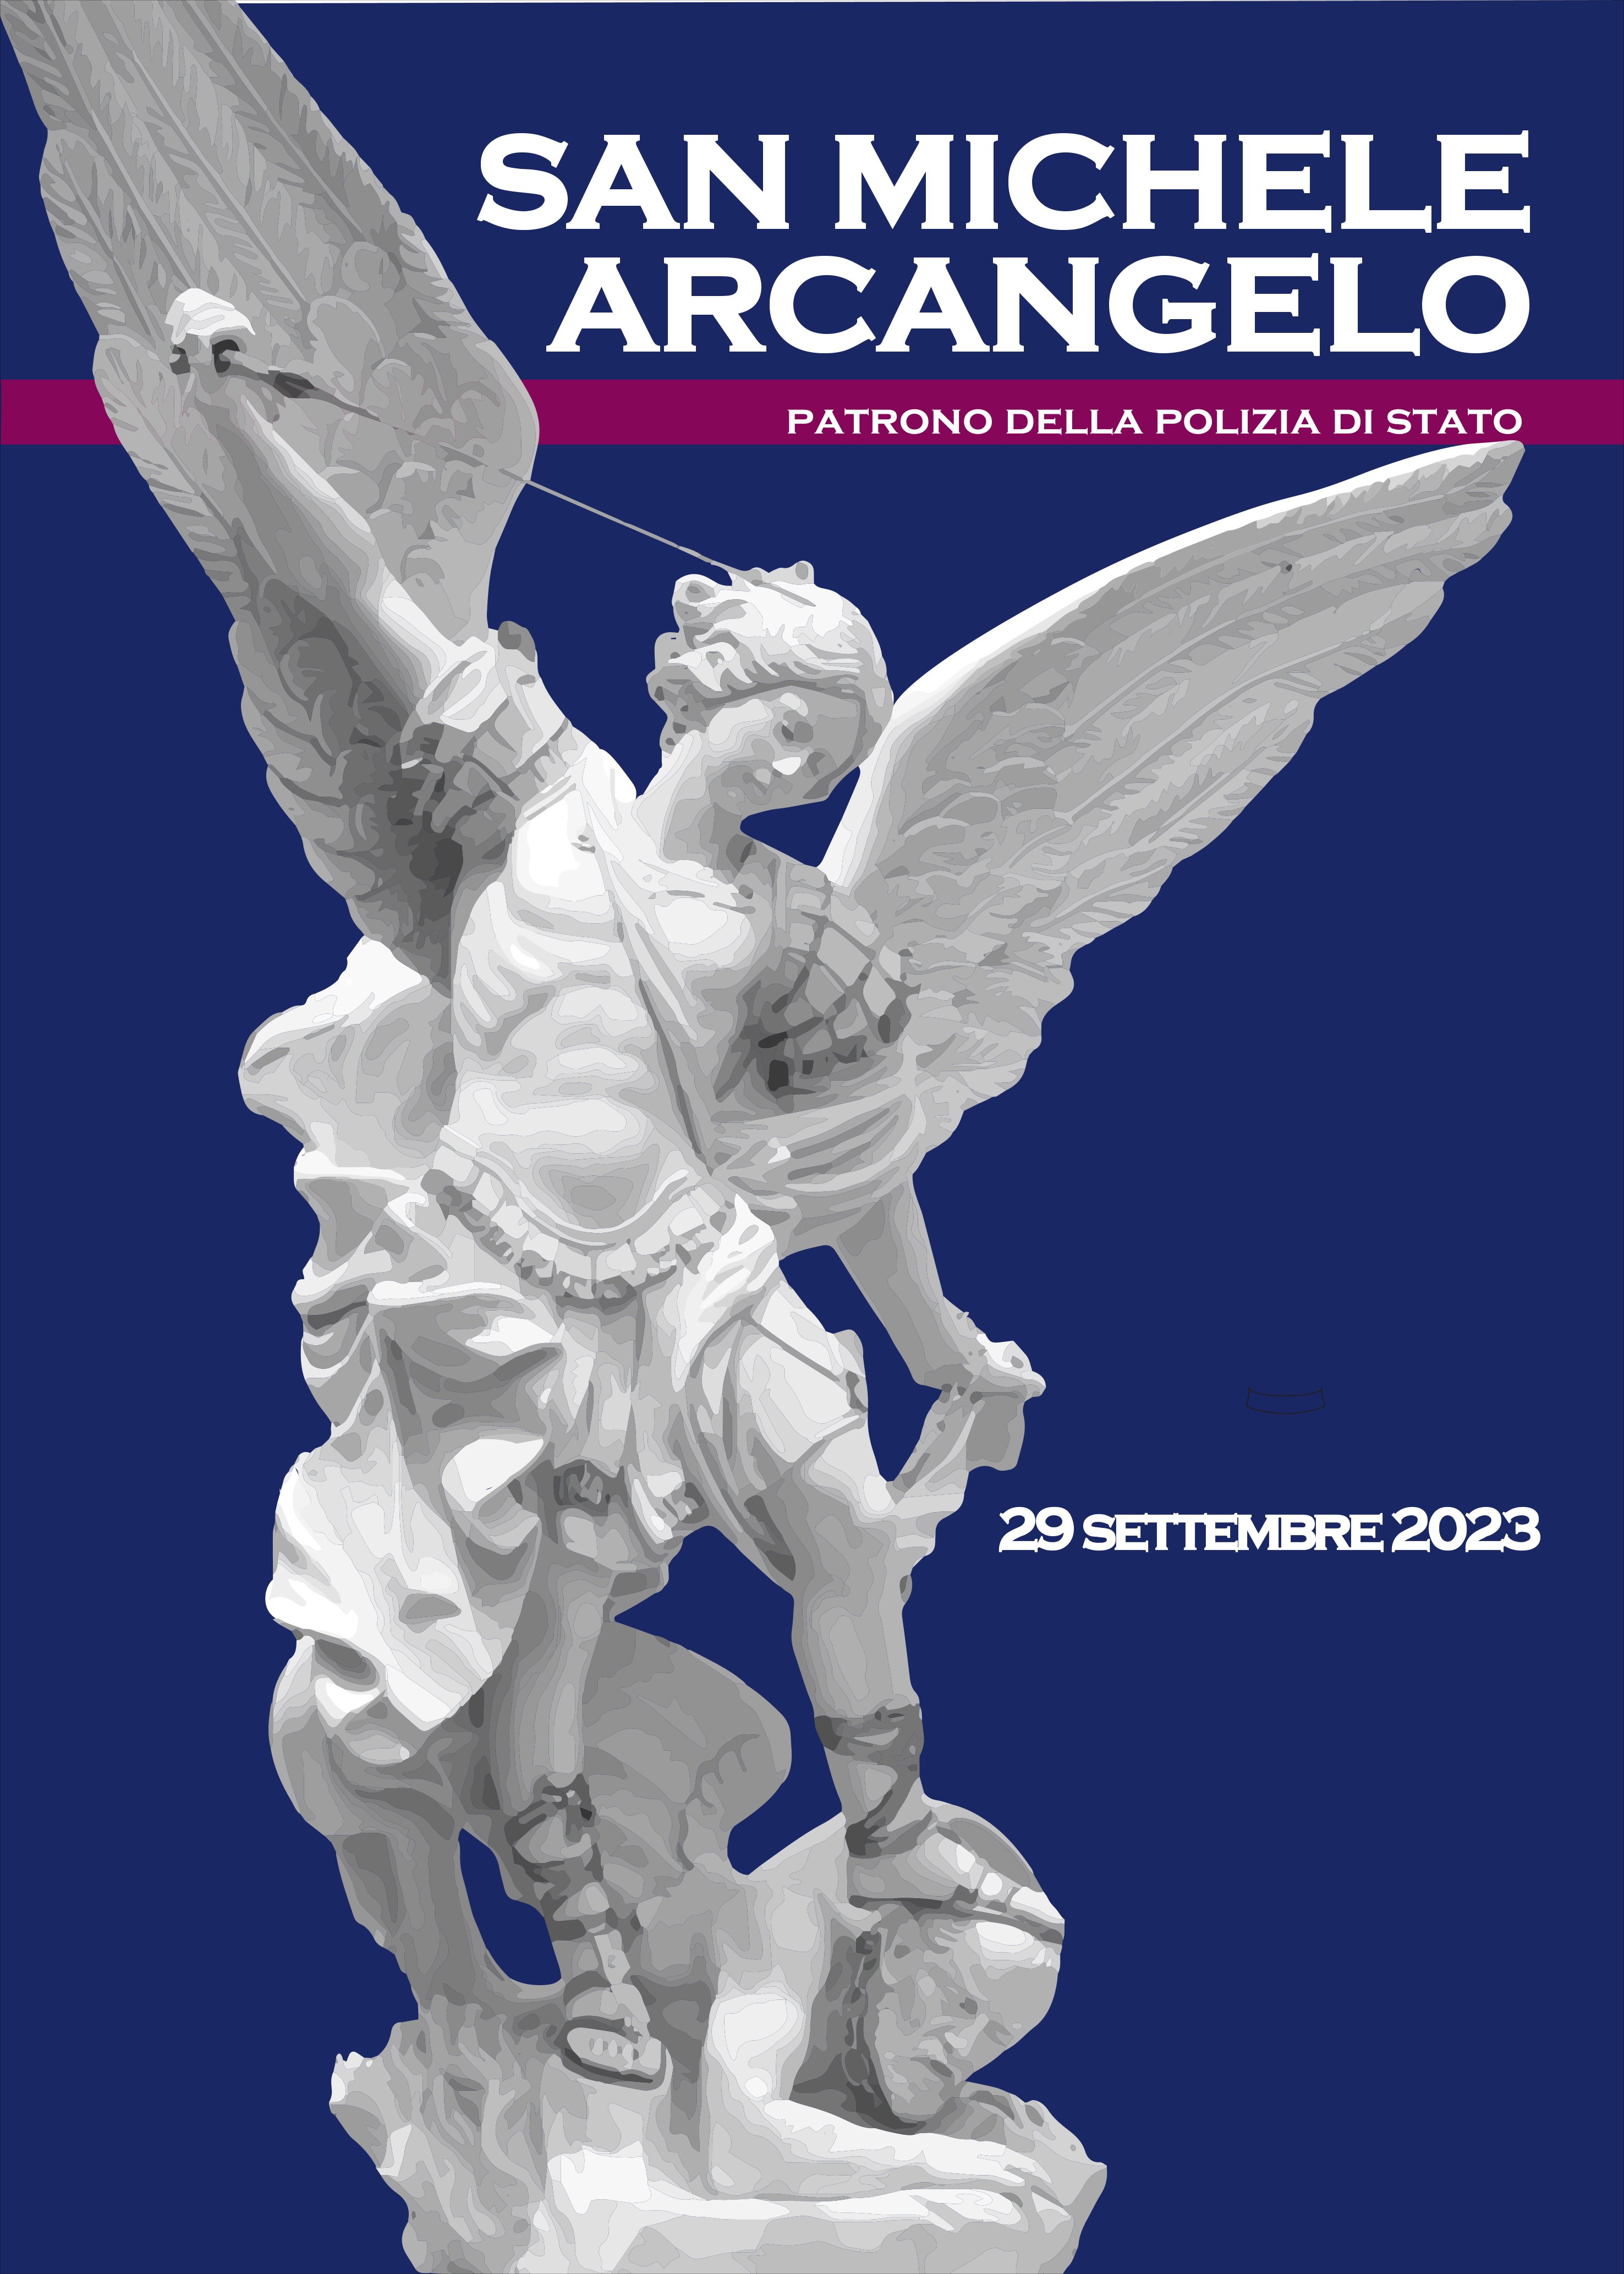 San Michele Arcangelo Patrono della Polizia di Stato - Questura di Mantova